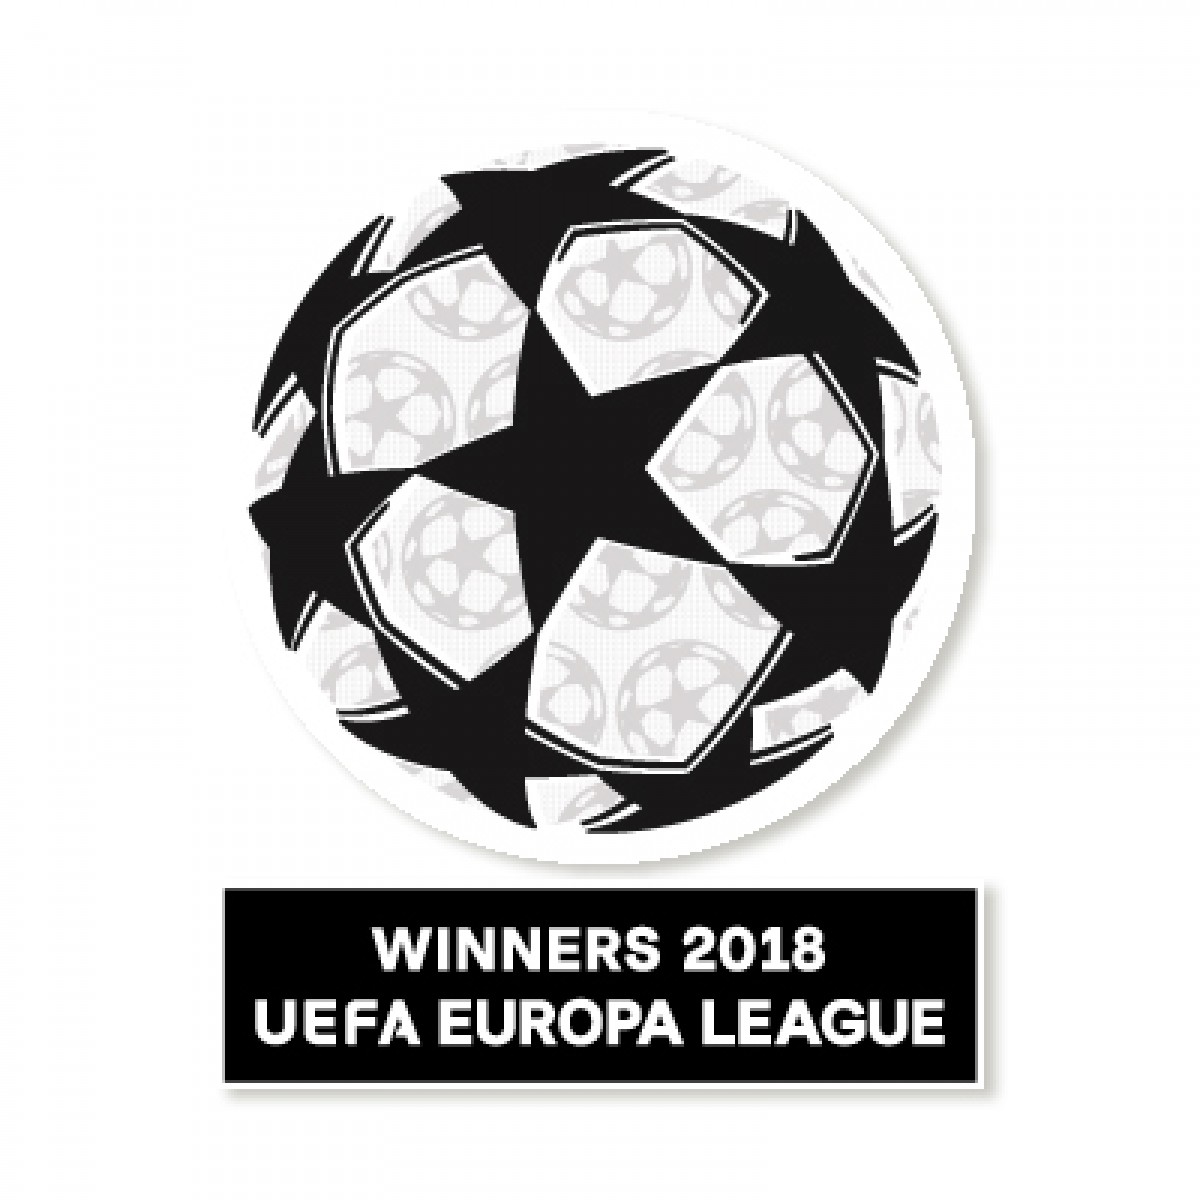 europa league winners 2018